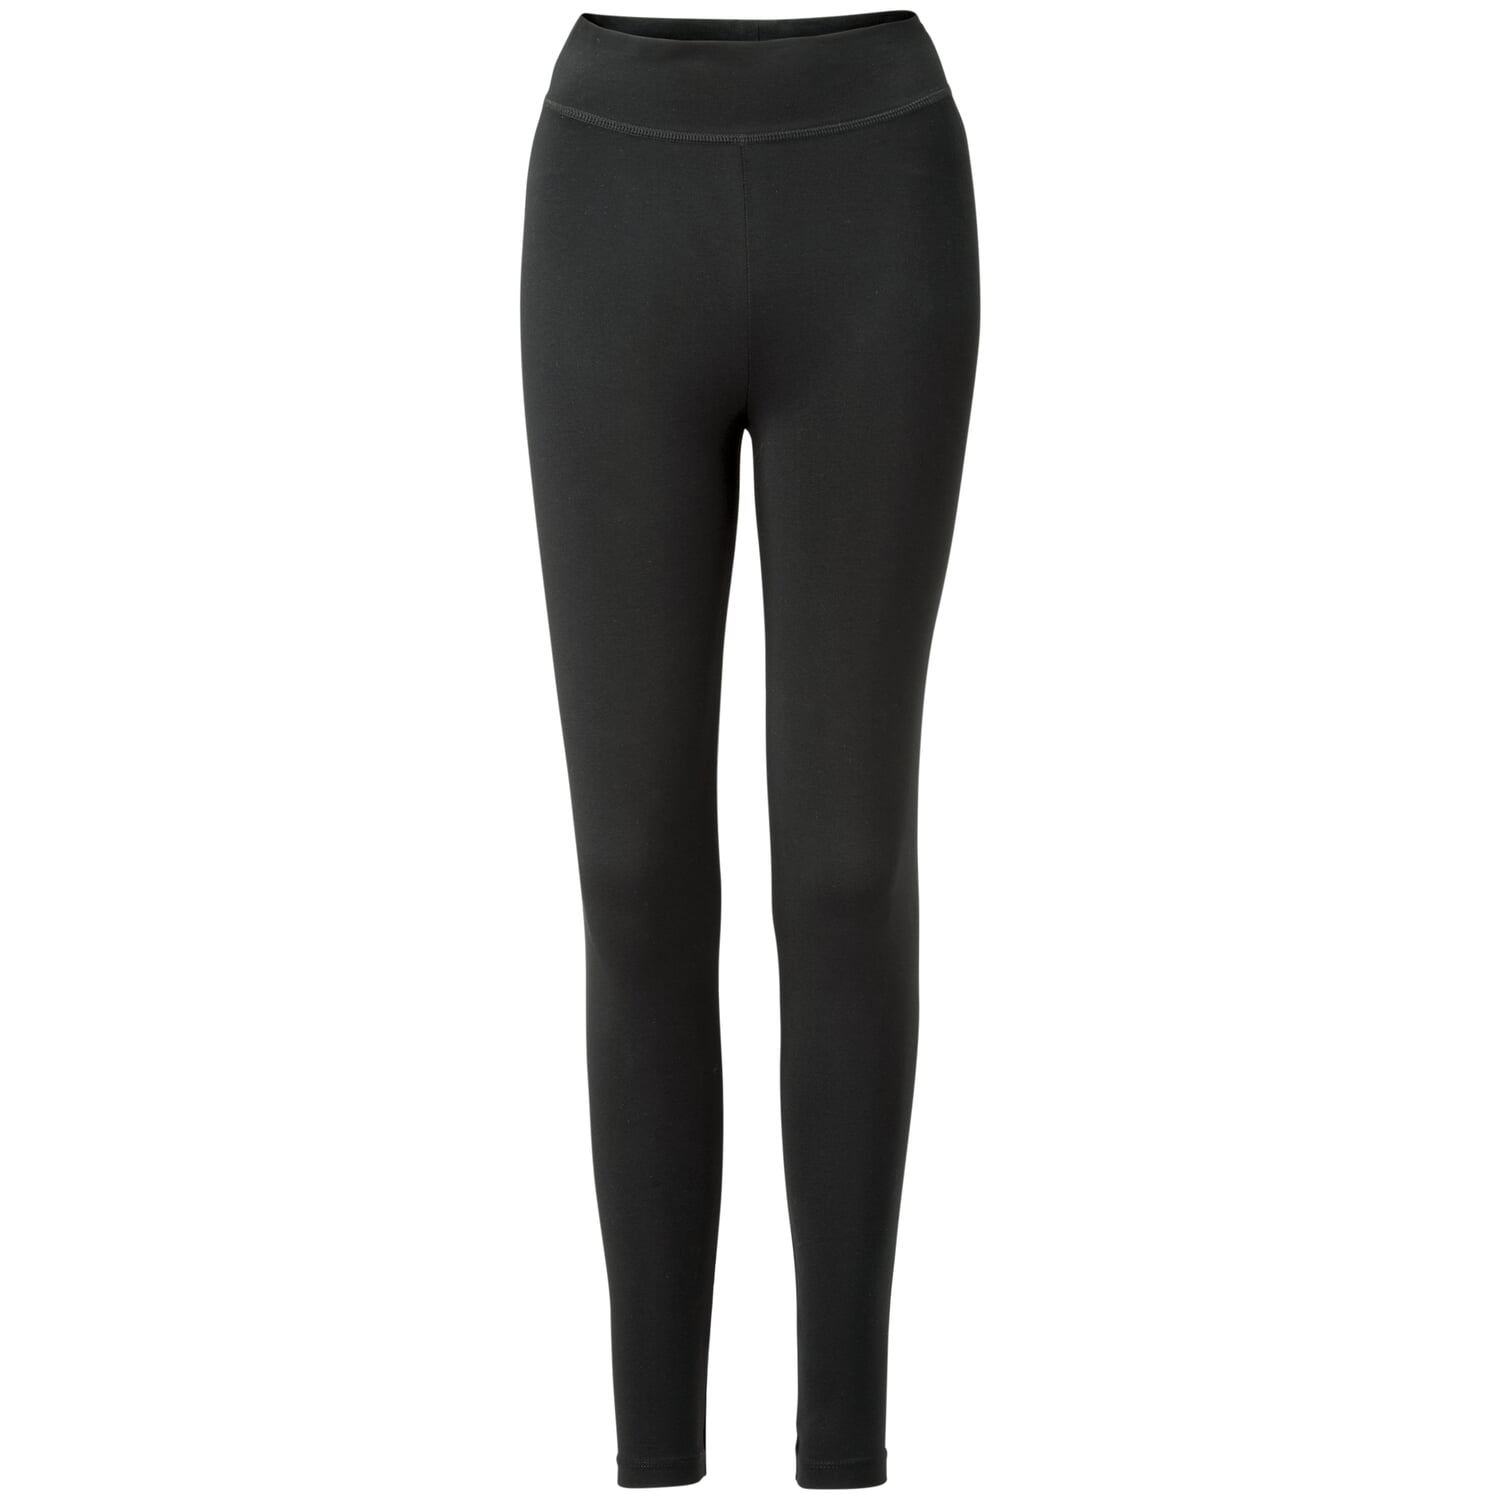 https://assets.manufactum.de/p/205/205280/205280_01.jpg/ladies-jersey-leggings.jpg?profile=pdsmain_1500